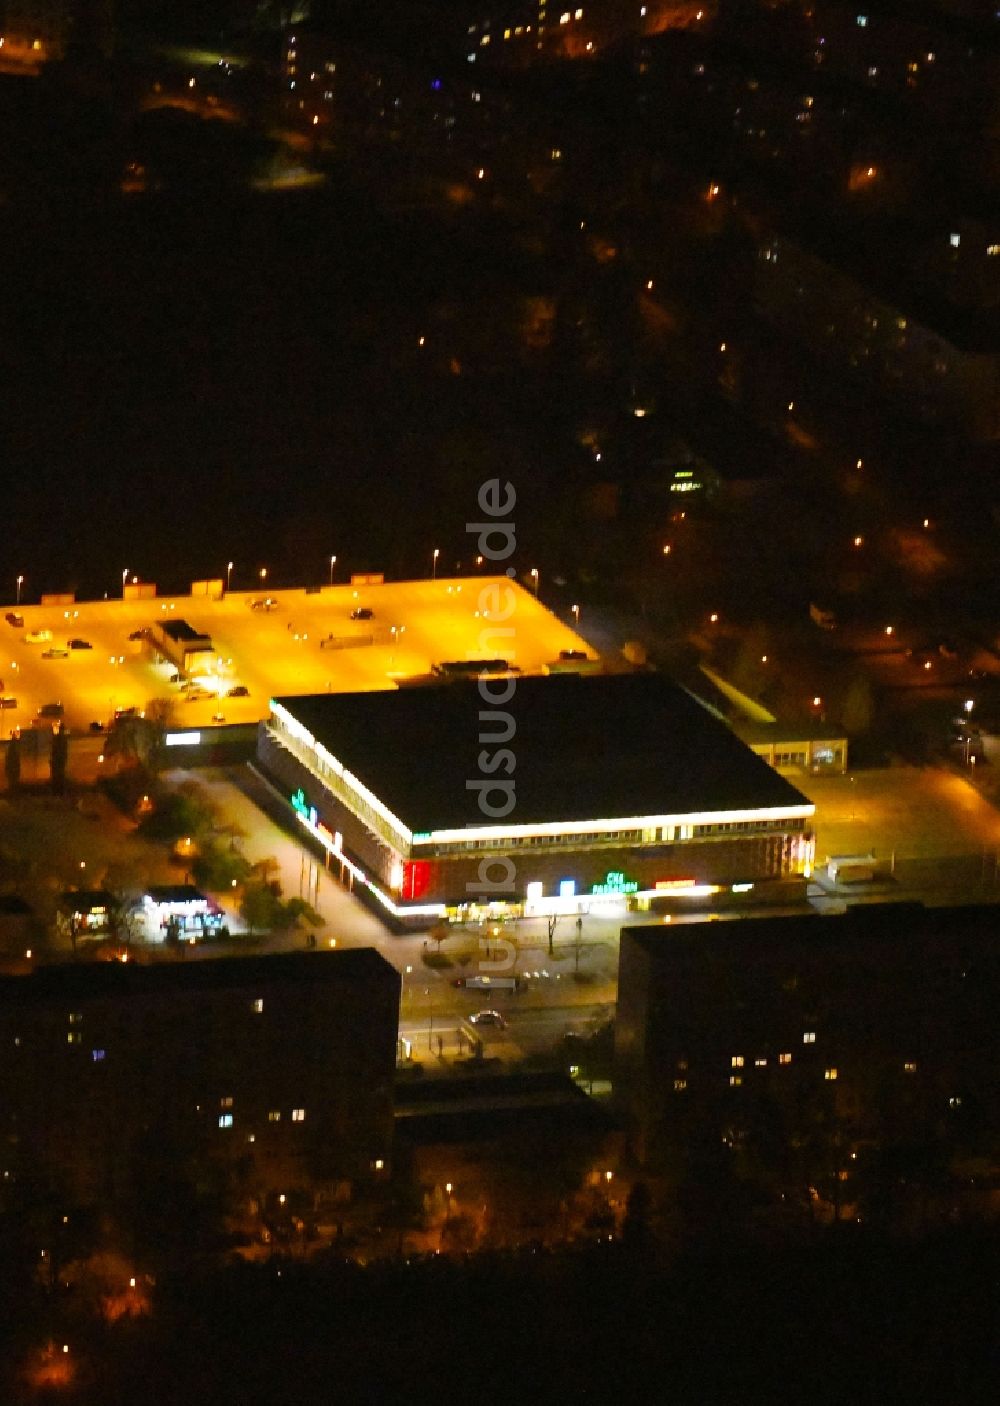 Nacht-Luftaufnahme Schwedt/Oder - Nachtluftbild Einkaufs- Zentrum CKS Centrum-Kaufhaus Schwedt in Schwedt/Oder im Bundesland Brandenburg, Deutschland